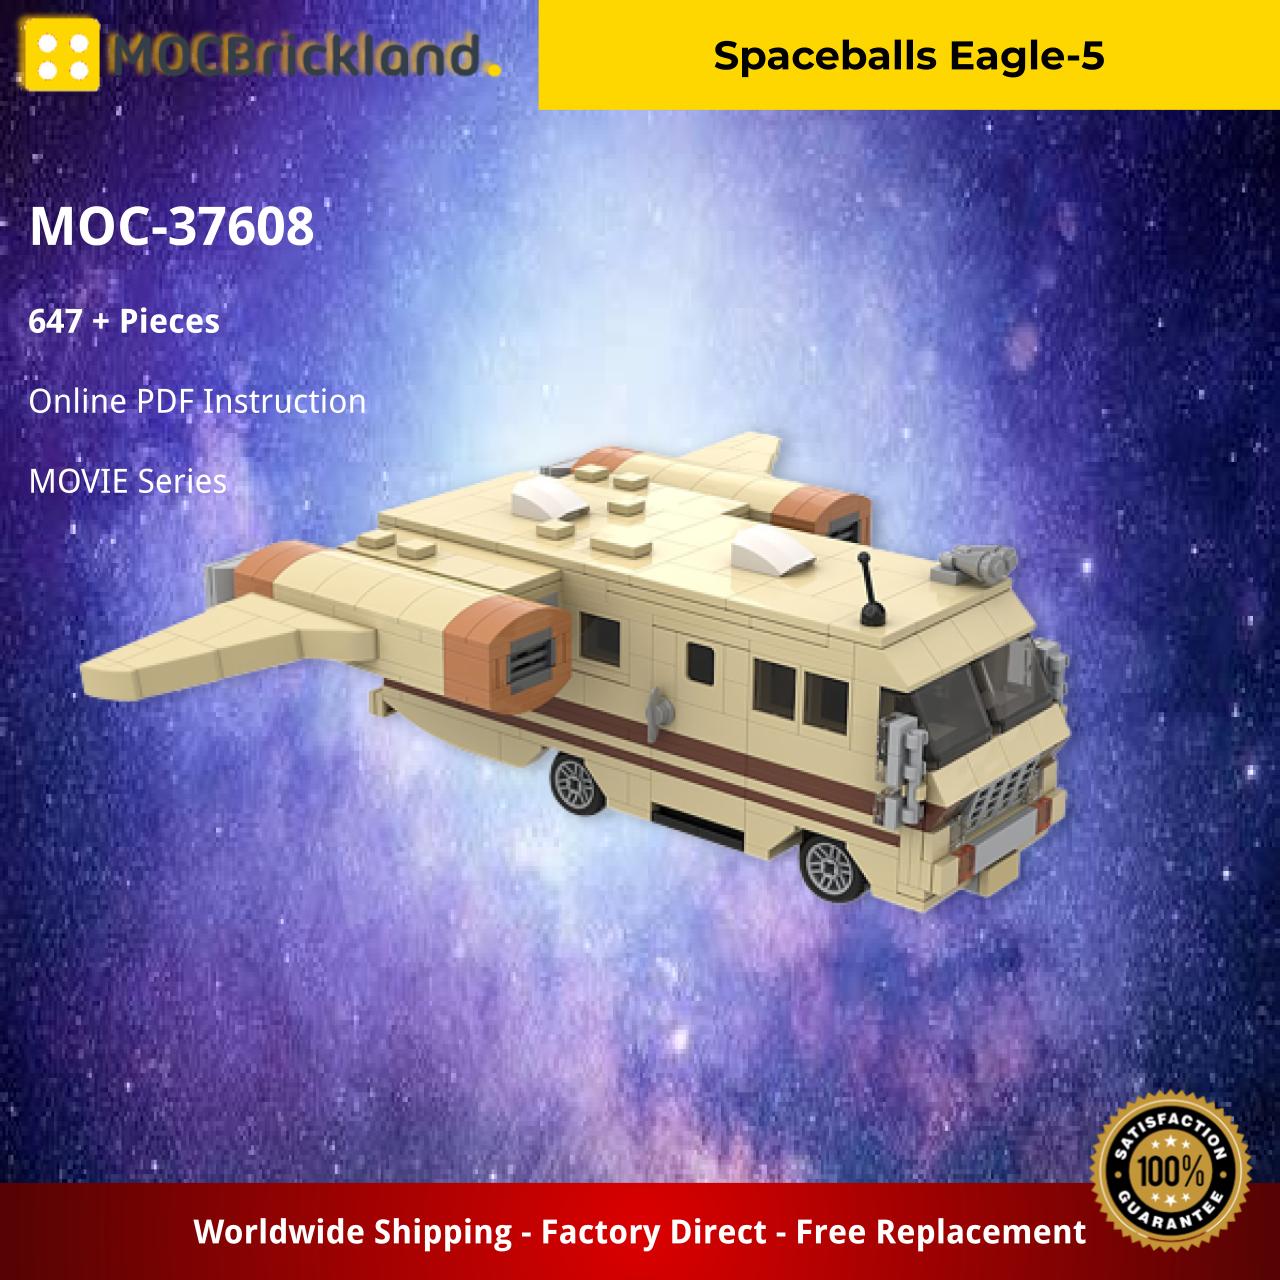 Spaceballs Eagle-5 MOVIE MOC-37608 WITH 647 PIECES